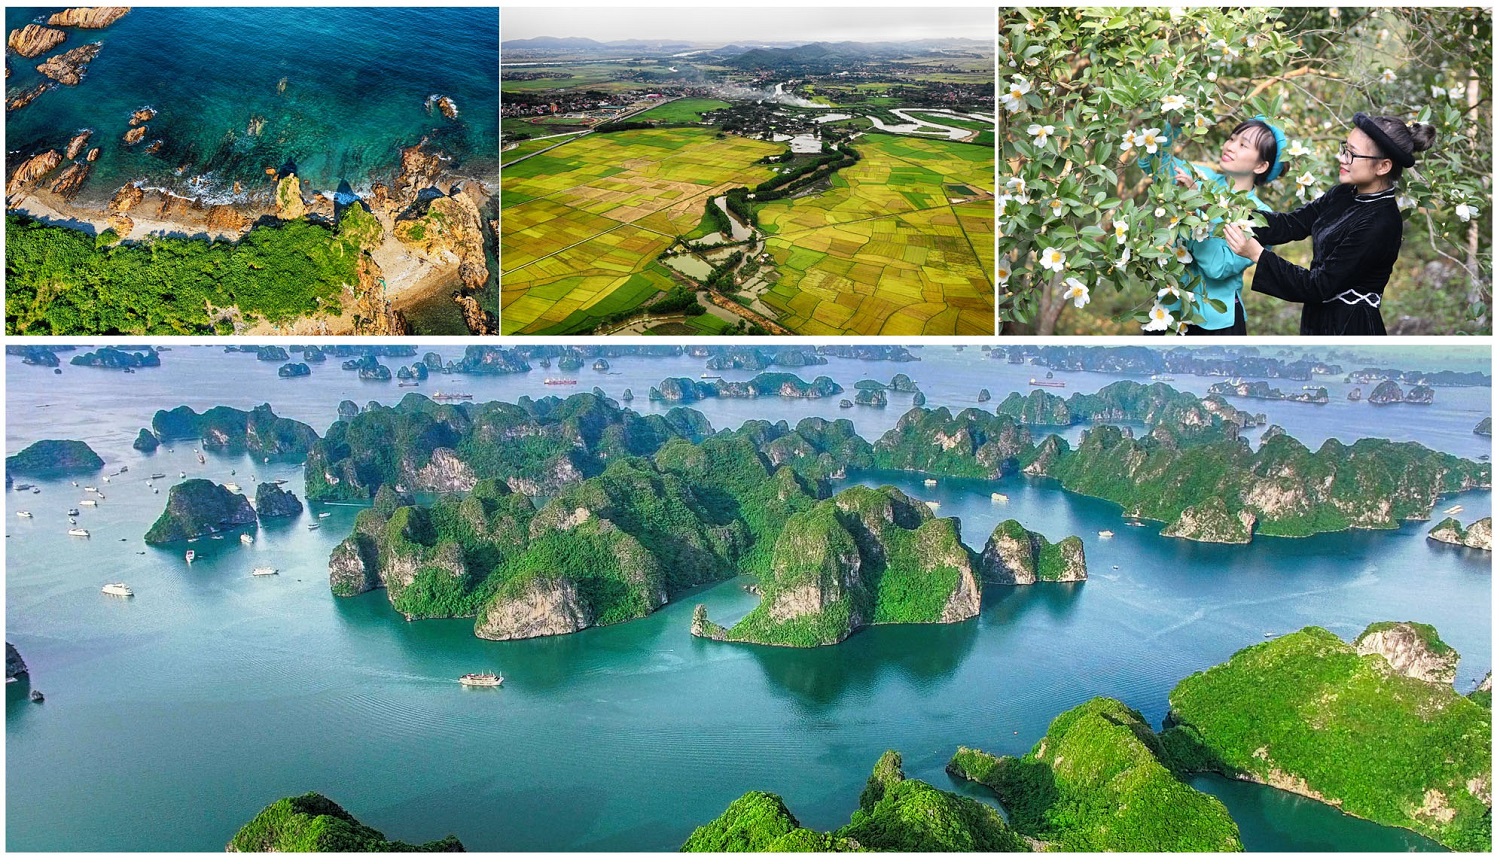 Được ví như một Việt Nam thu nhỏ, Quảng Ninh sở hữu những nguồn lực về tài nguyên, khoáng sản, cảnh quan kỳ vĩ, thiên nhiên phong phú, đặc sắc